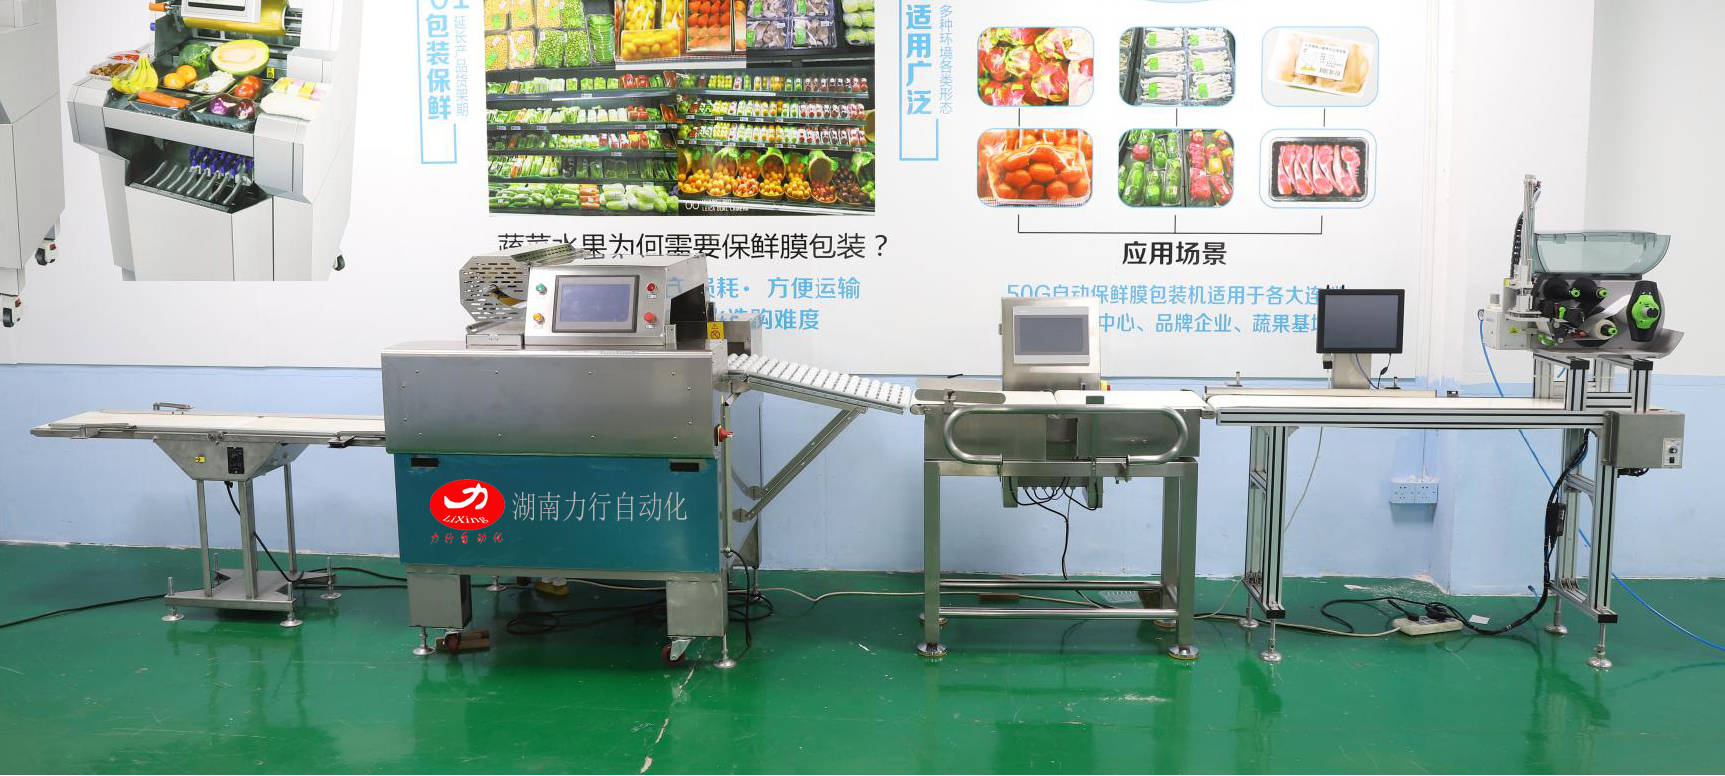 果蔬保鲜膜裹膜包装机自动称重贴标 蔬菜保鲜膜裹膜机